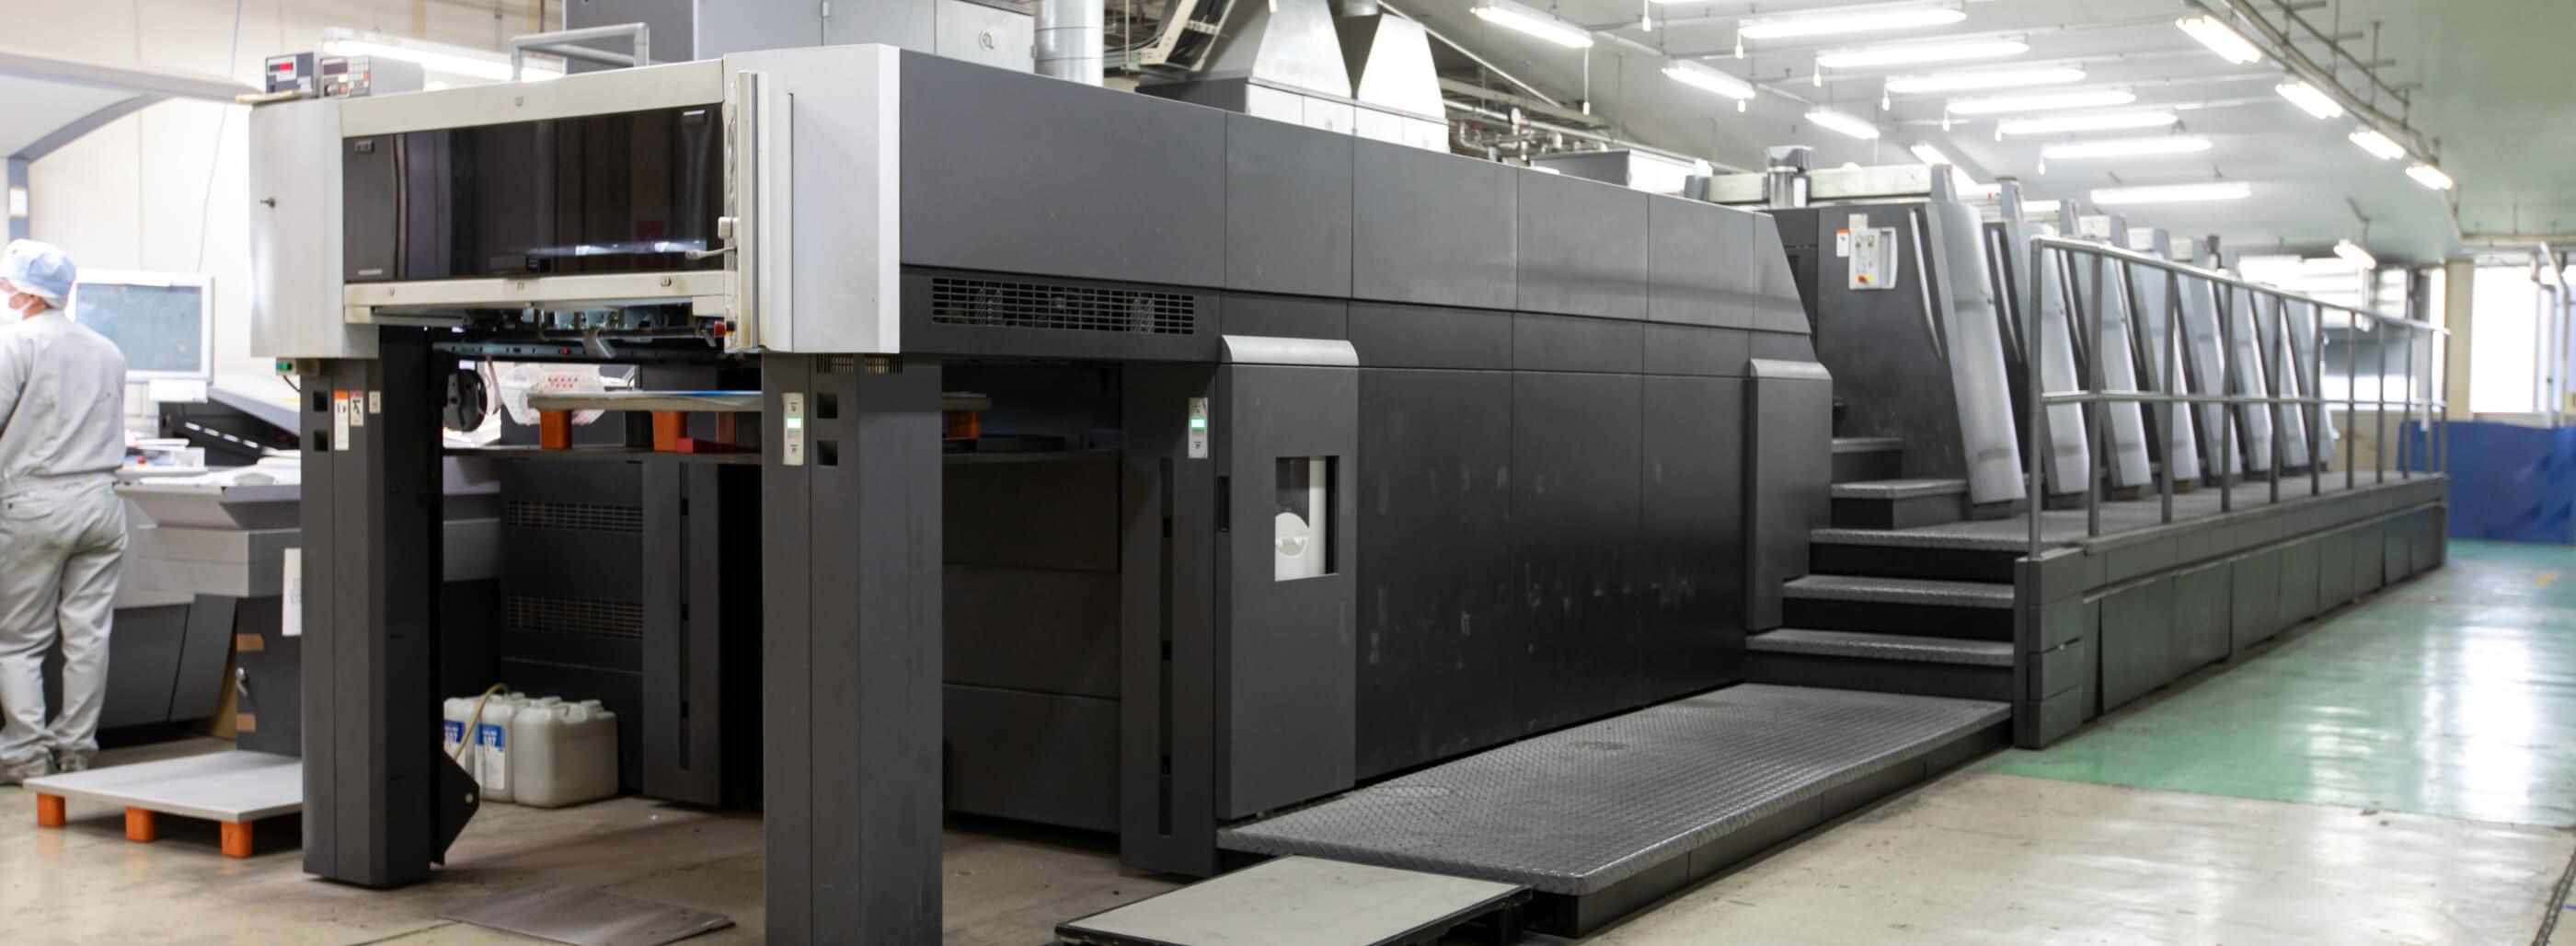 富士印刷株式会社で使用されている設備の写真